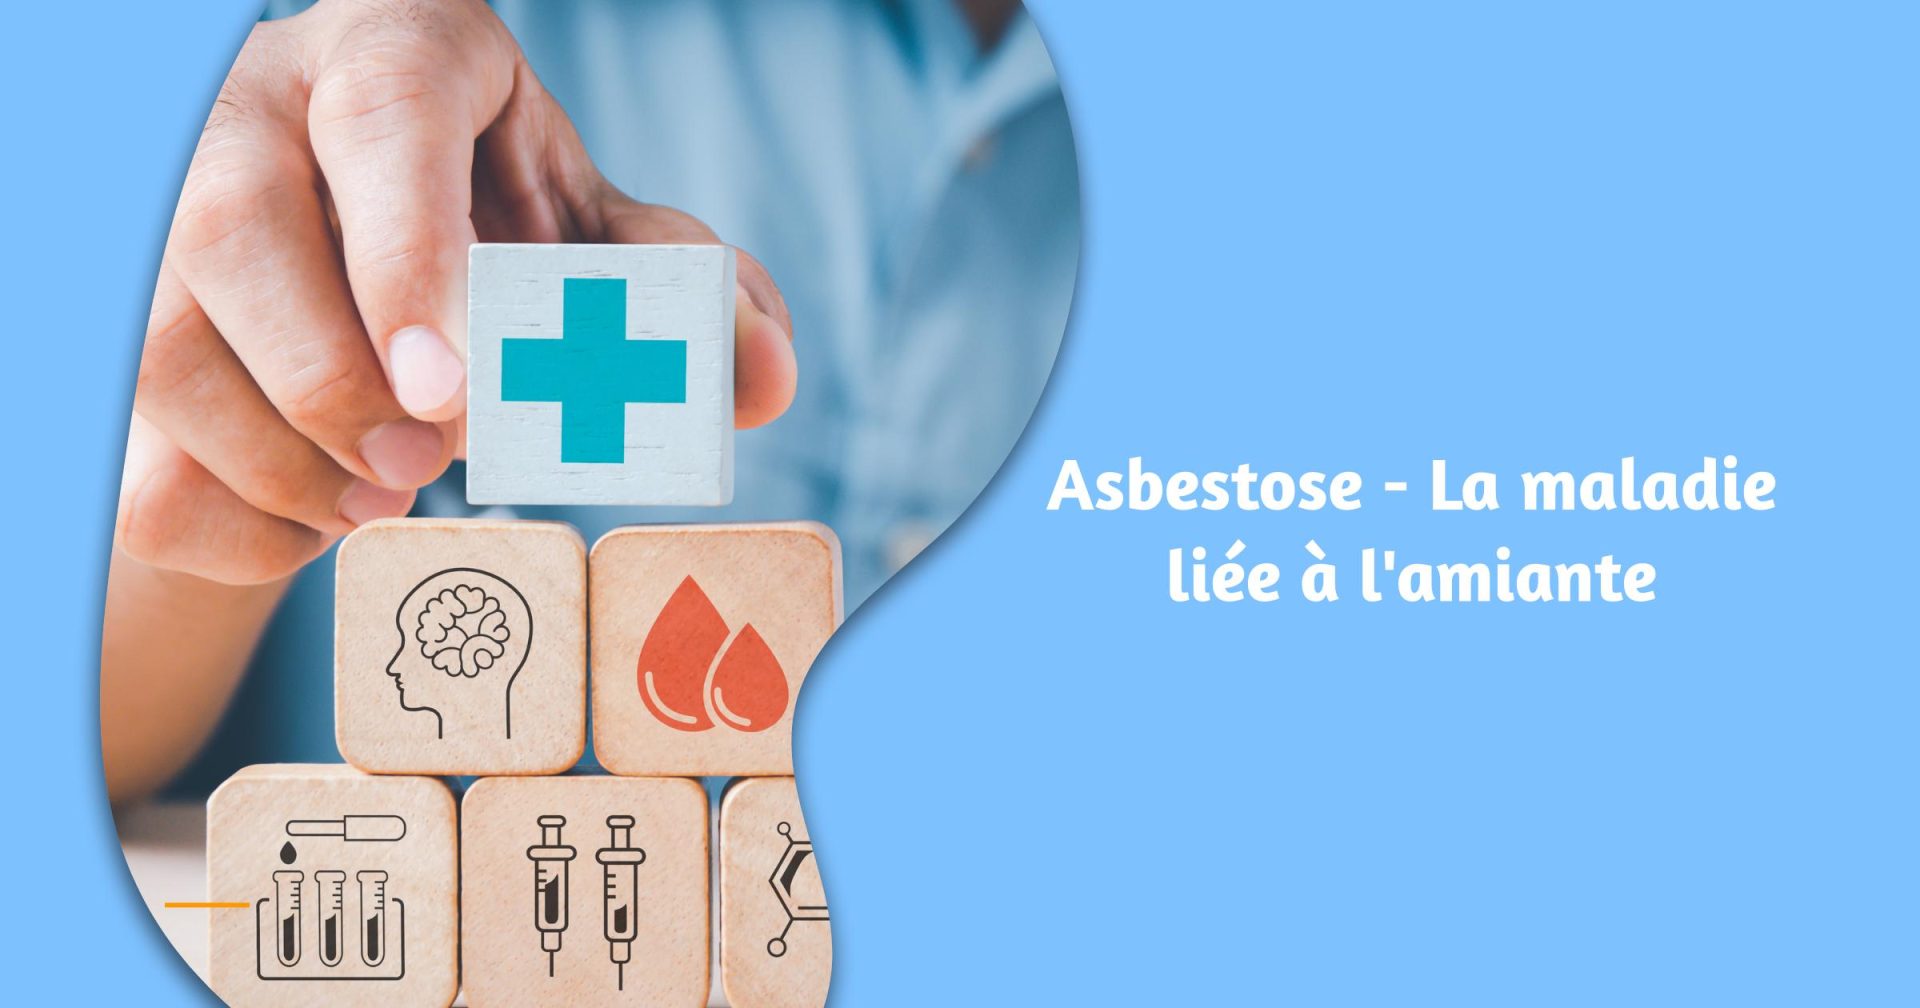 Asbestose - La maladie liée à l'amiante